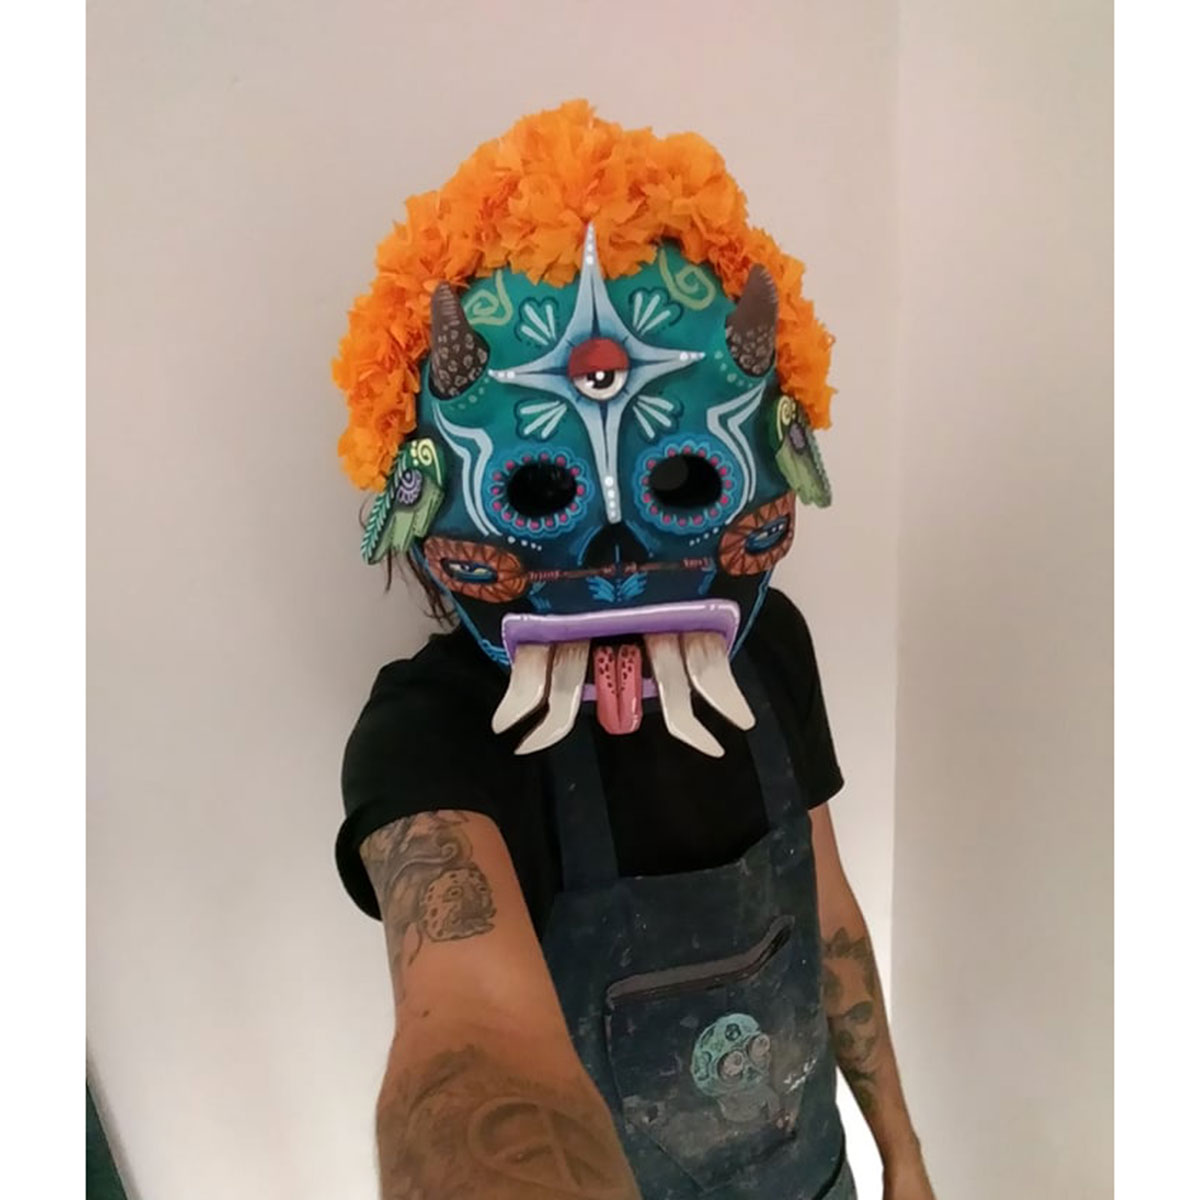 Cartoneria (Mexican Paper Mache) Isaias Alejandro Morales Delgado: Handmade Wearable Mask – Muerte Florida (Flowery Death) Alebrijes